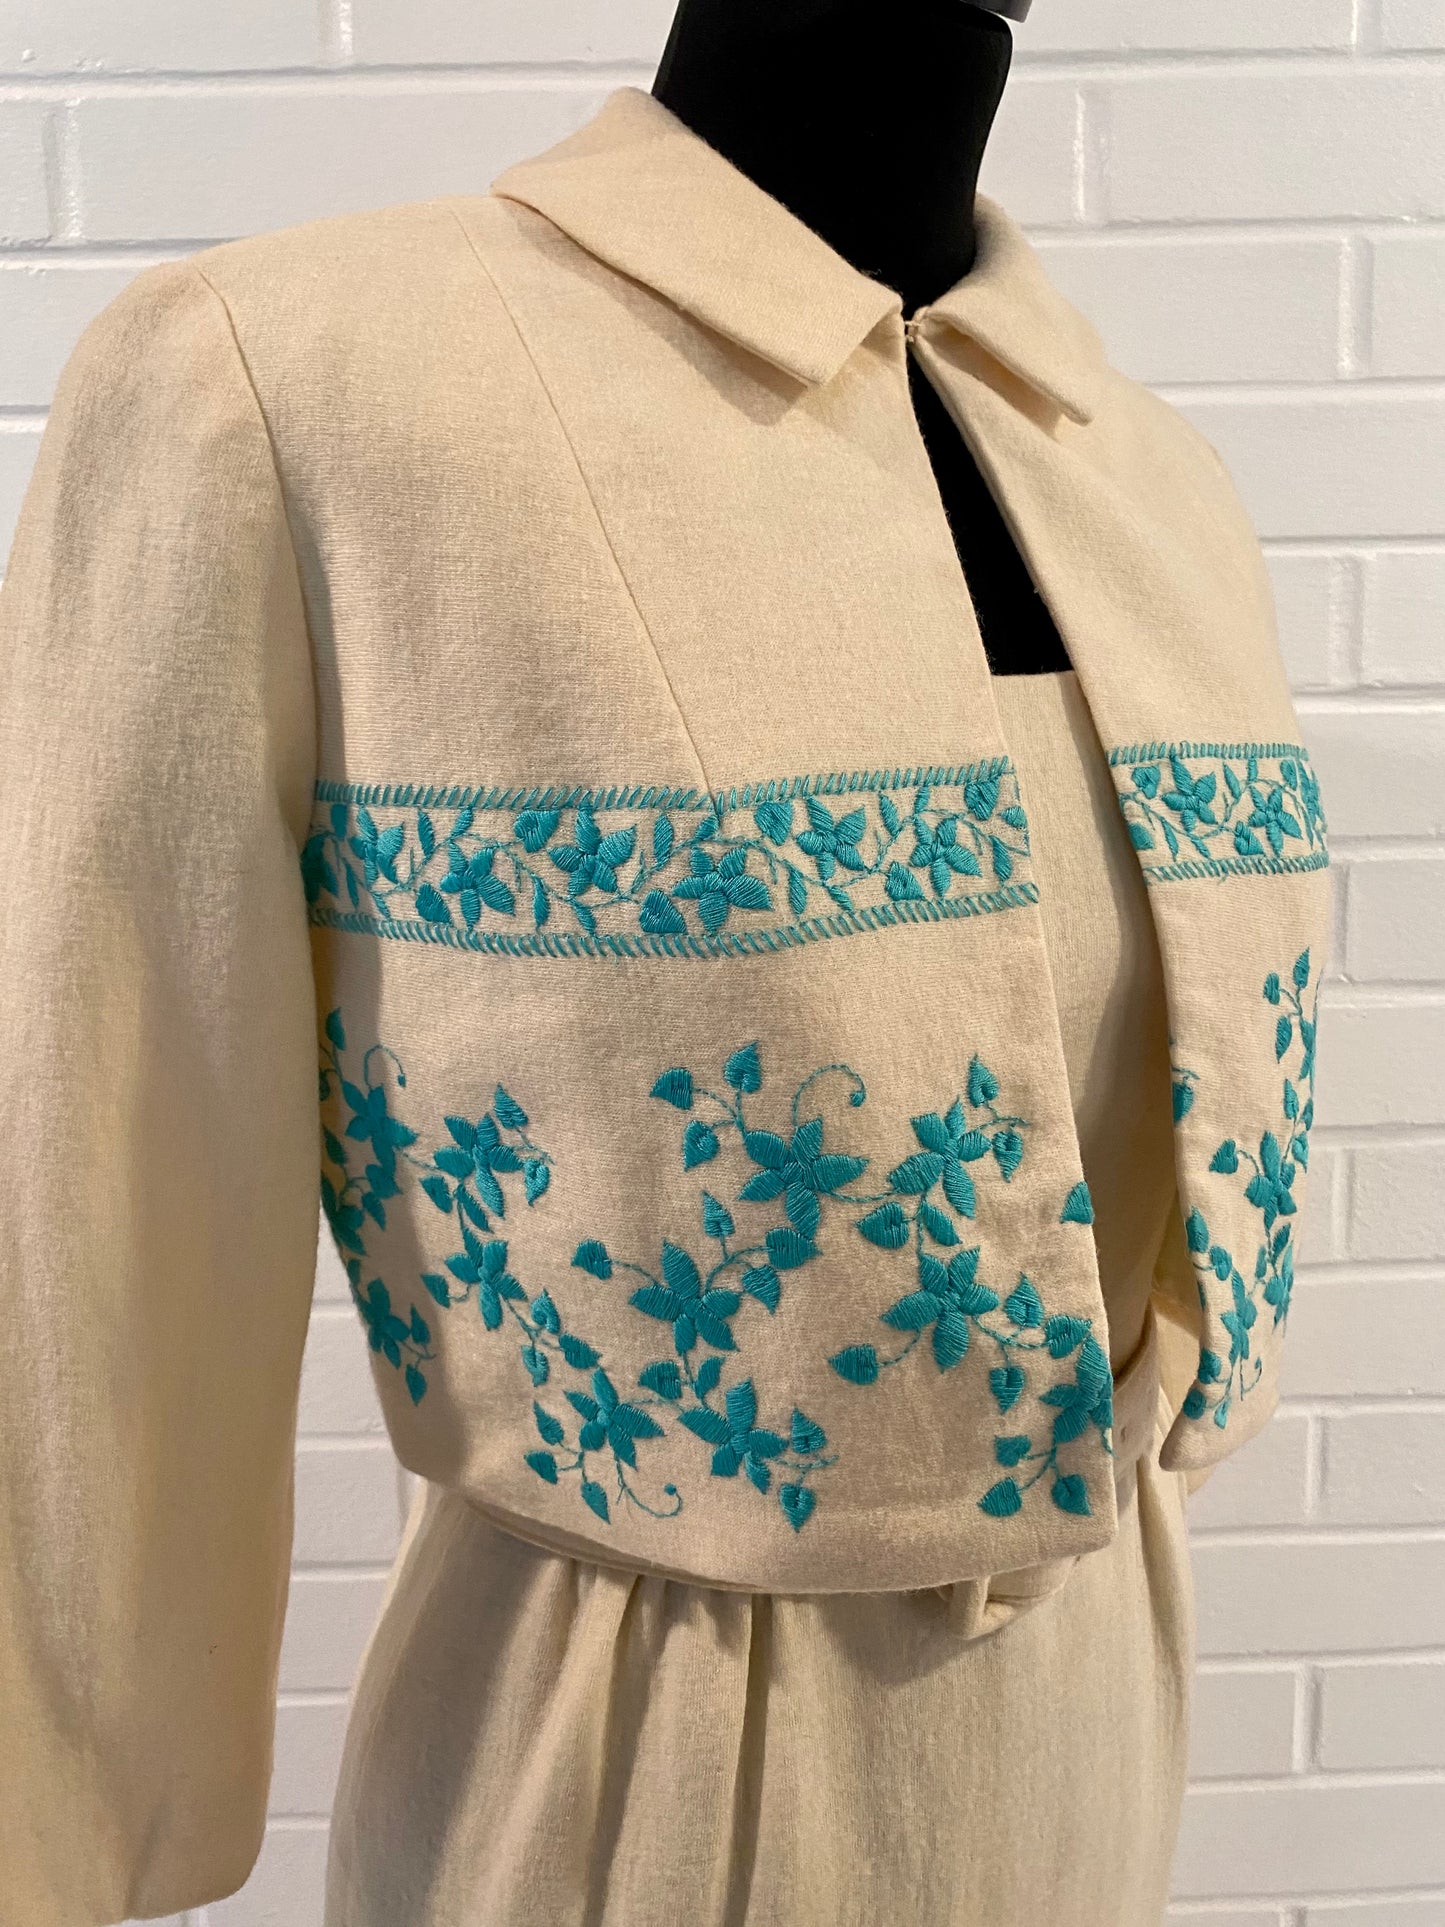 1950s Pat Hartly Dress & Jacket